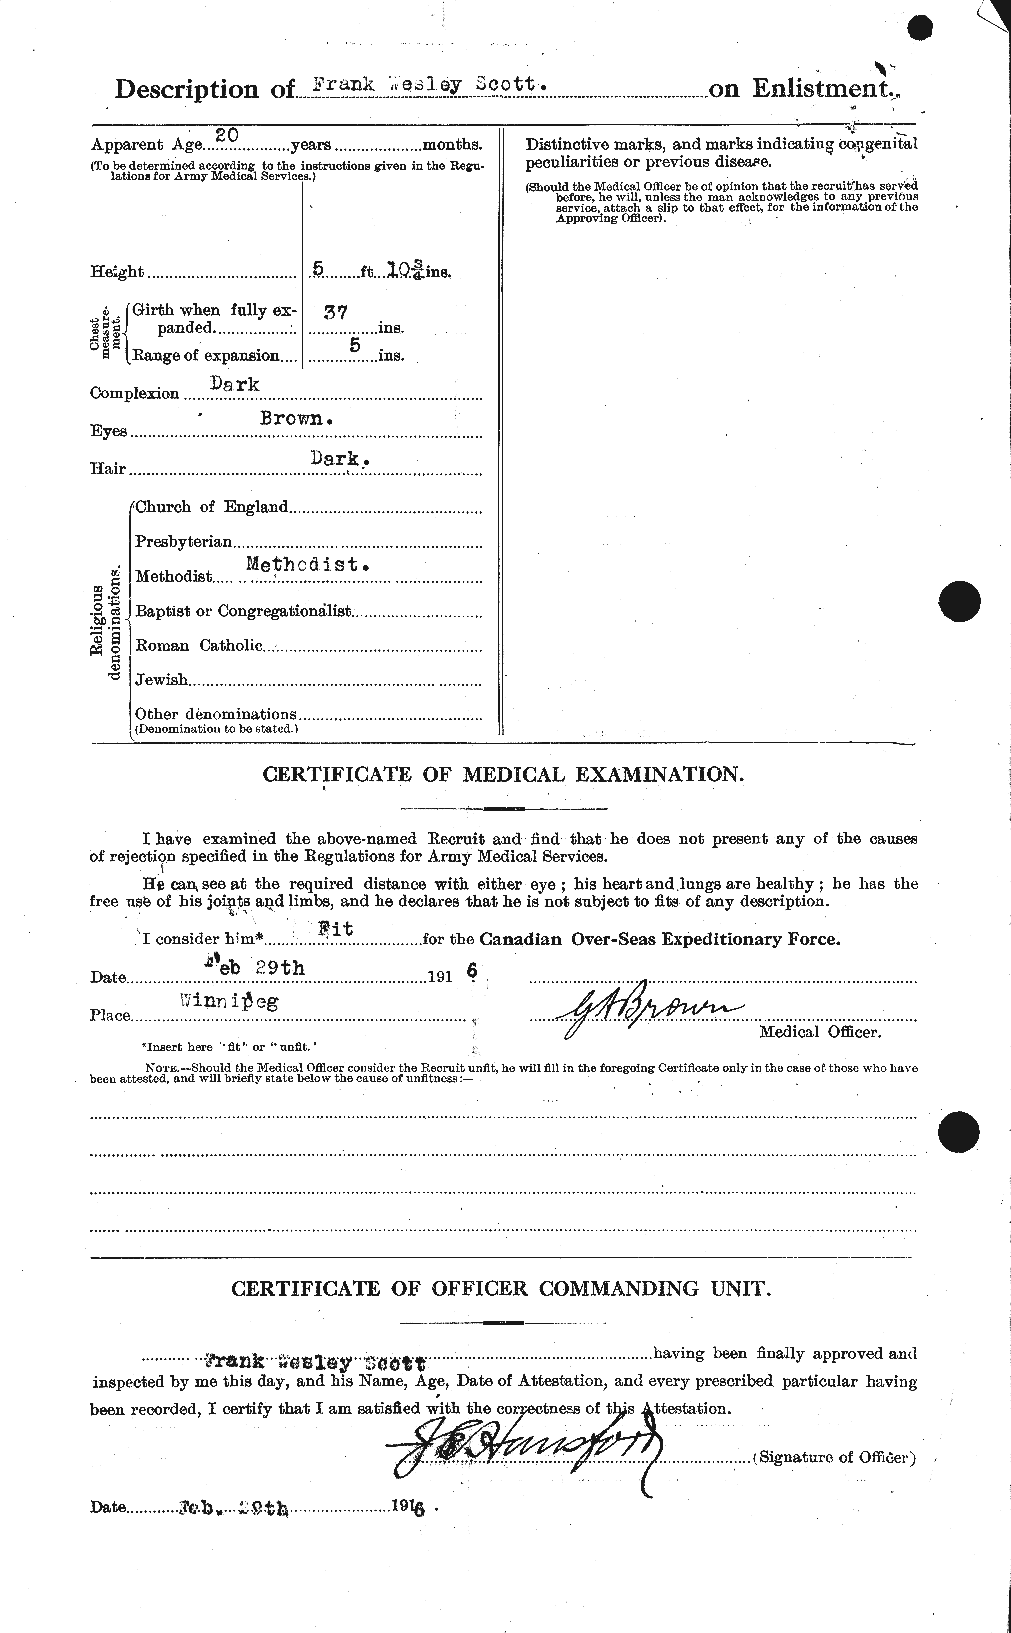 Dossiers du Personnel de la Première Guerre mondiale - CEC 084688b